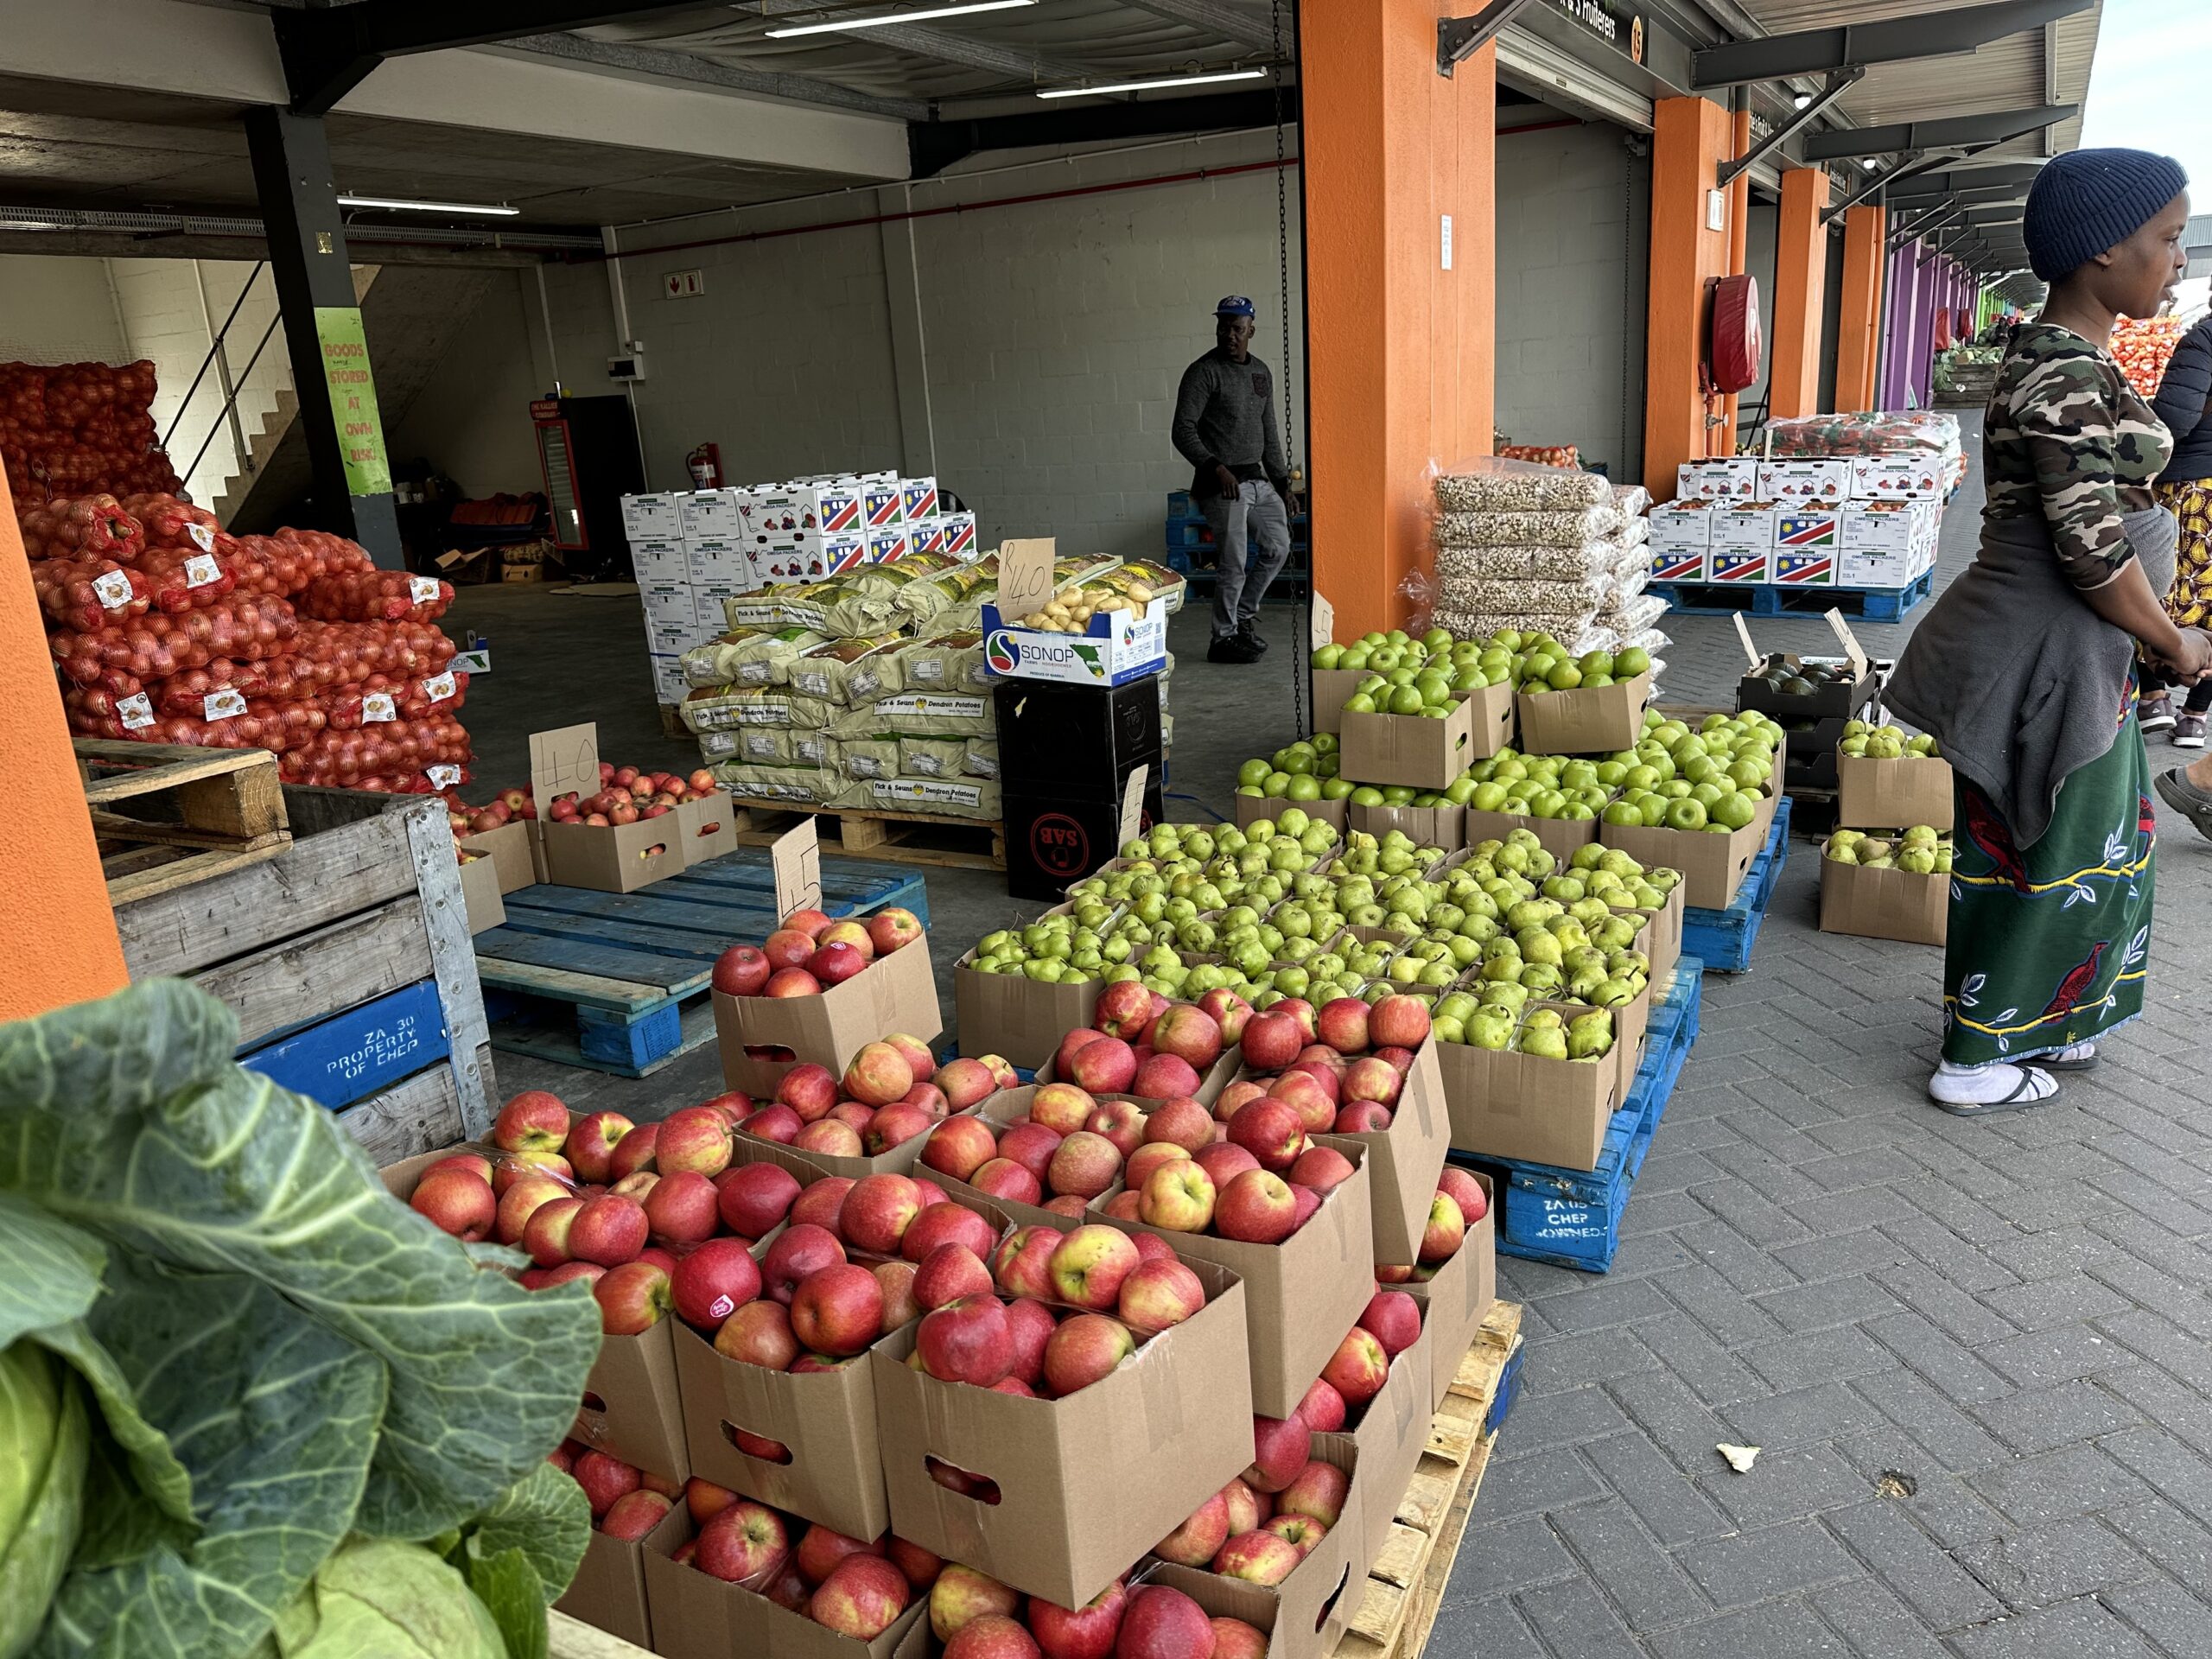 Cape Town Market